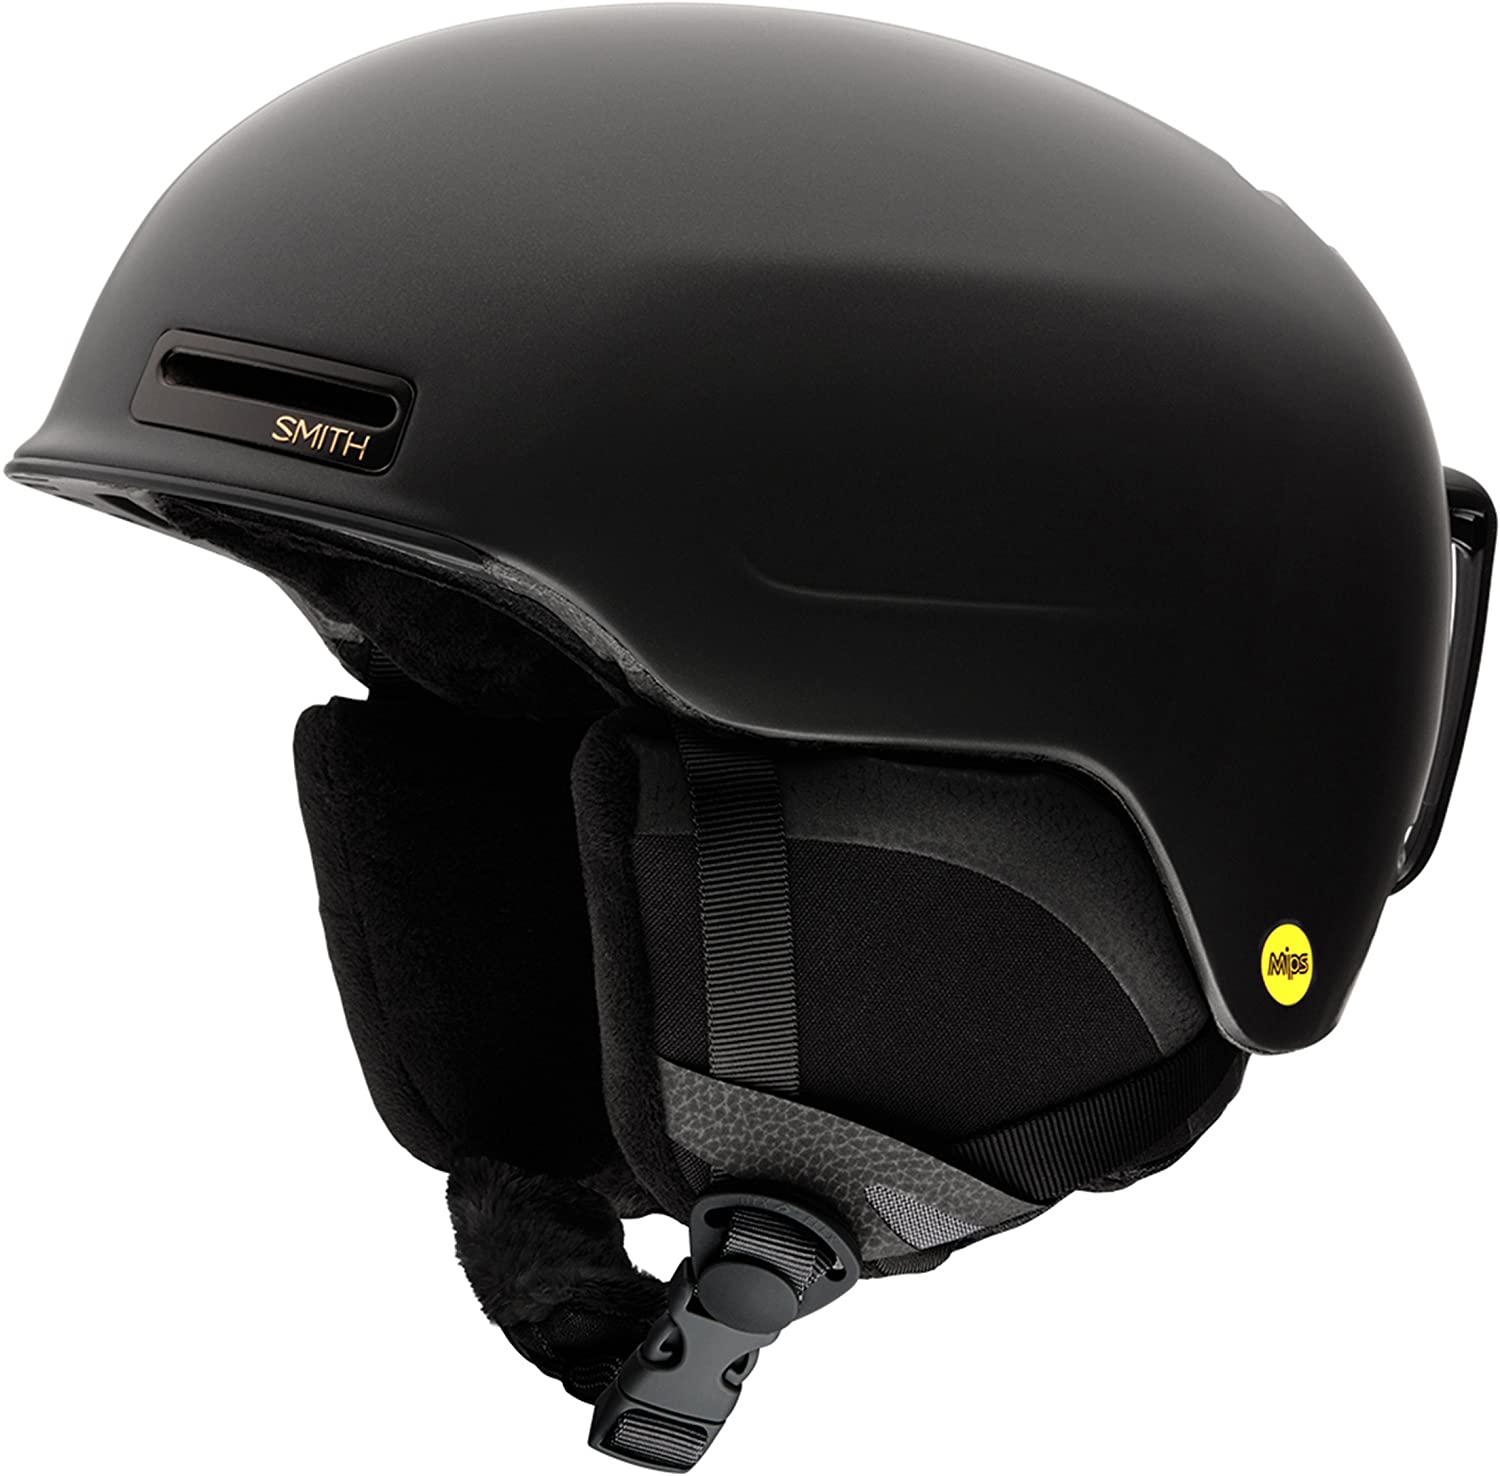 SMITH Allure MIPS ski helmet E0068890M5155-Matte Black Pearl